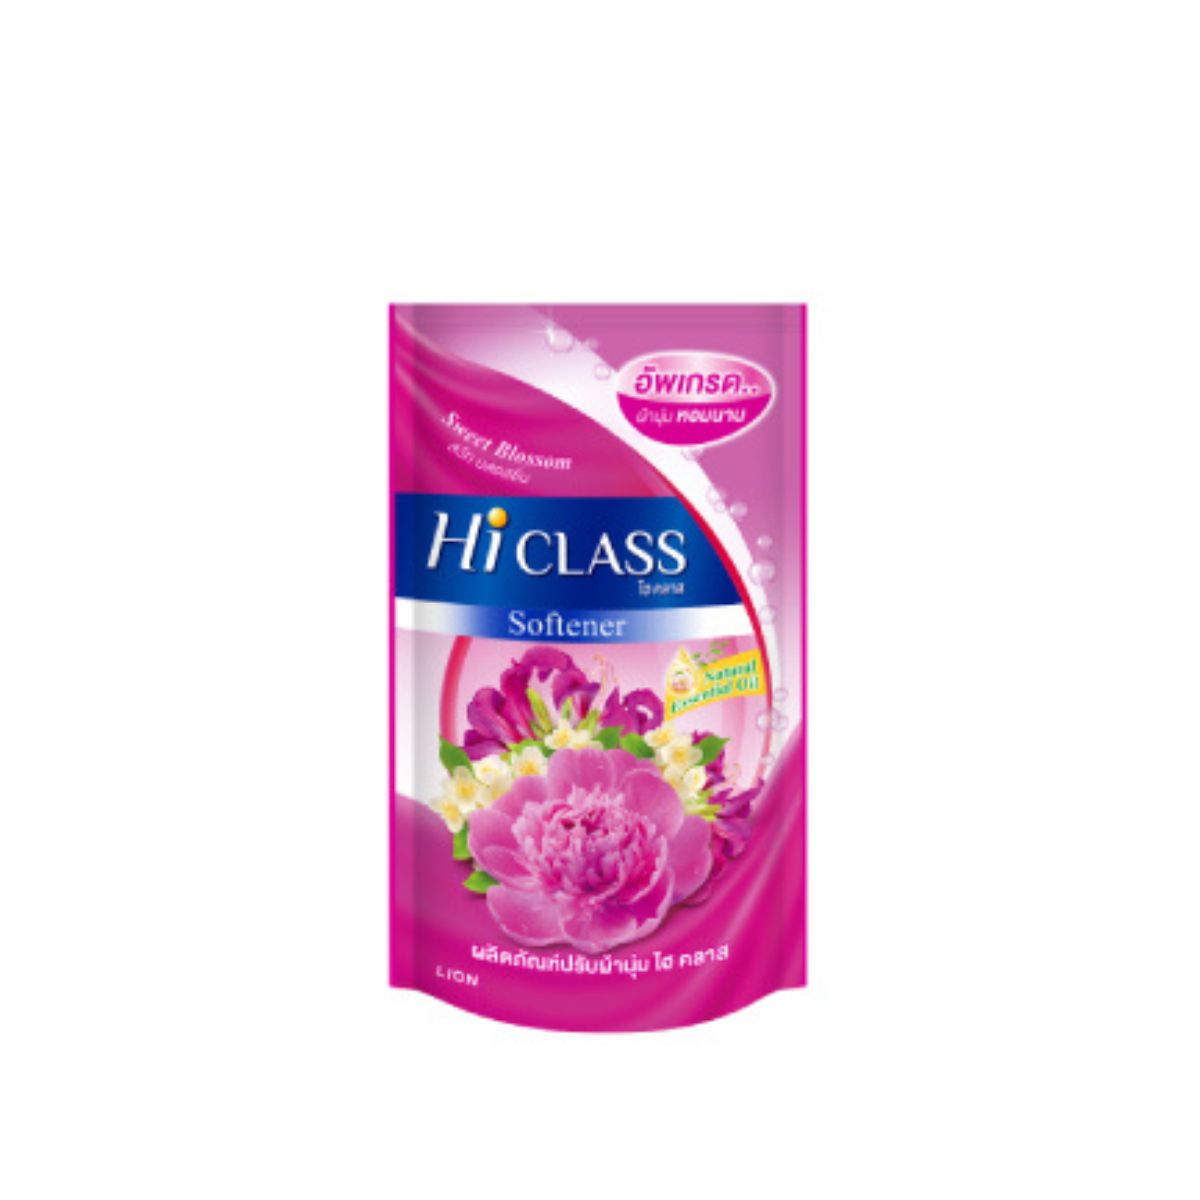 Hi Class - Softener - Sweet Blossom - 550ml